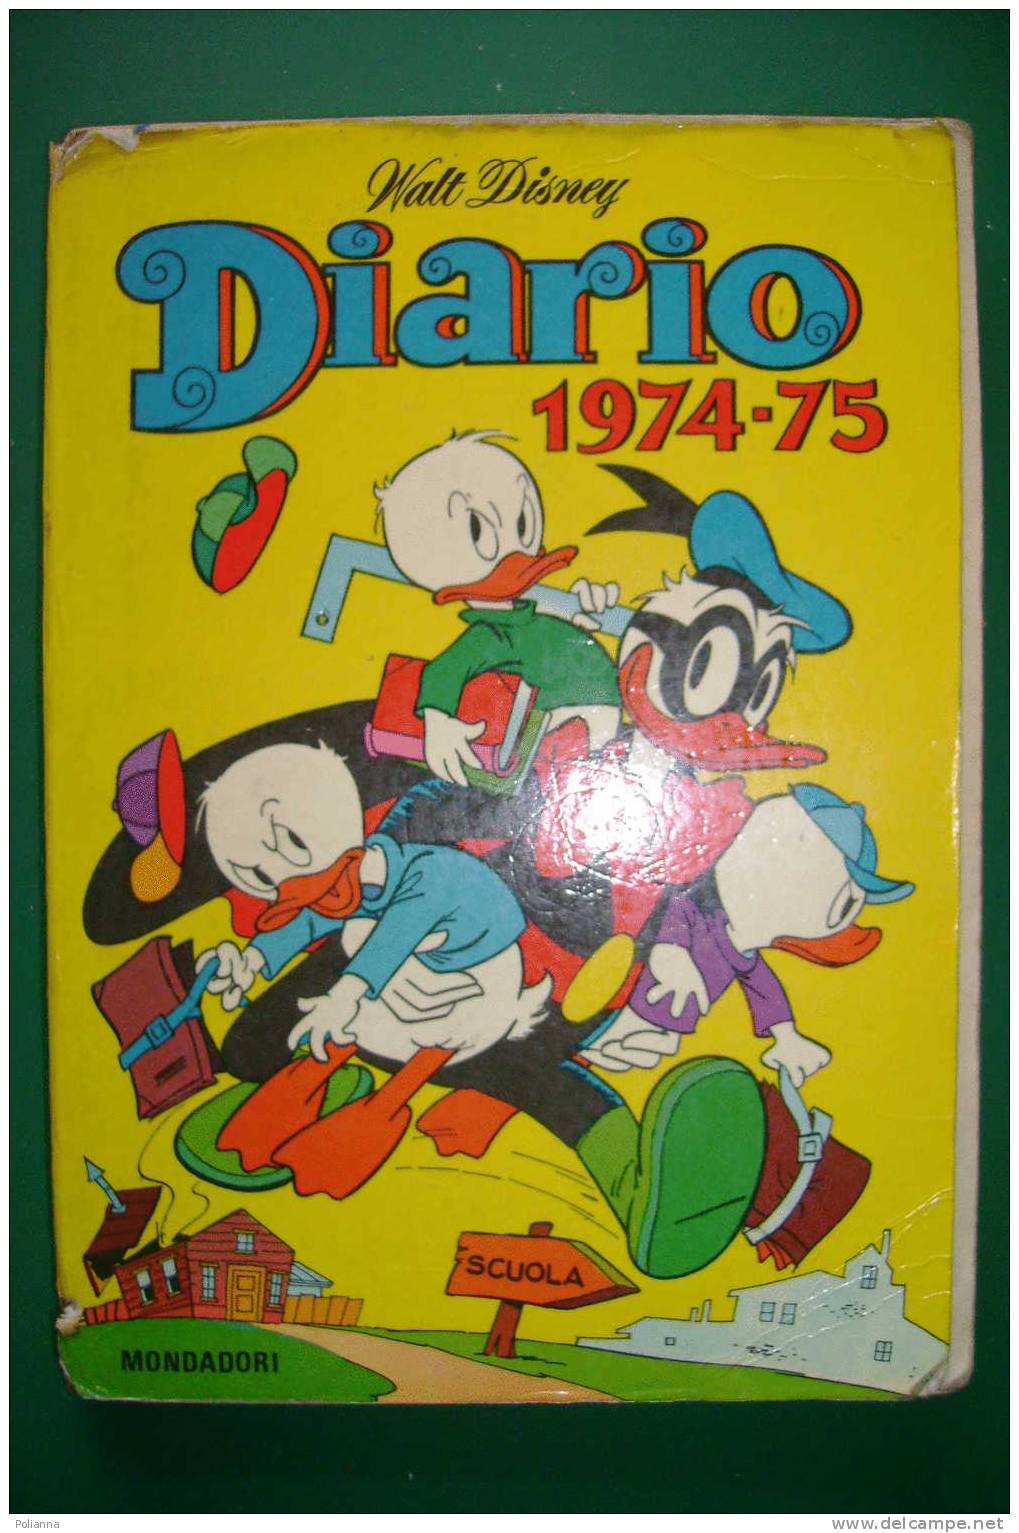 PDK/33 DIARIO SCUOLA Mondadori 1974-75 PAPERINO WALT DISNEY - Disney